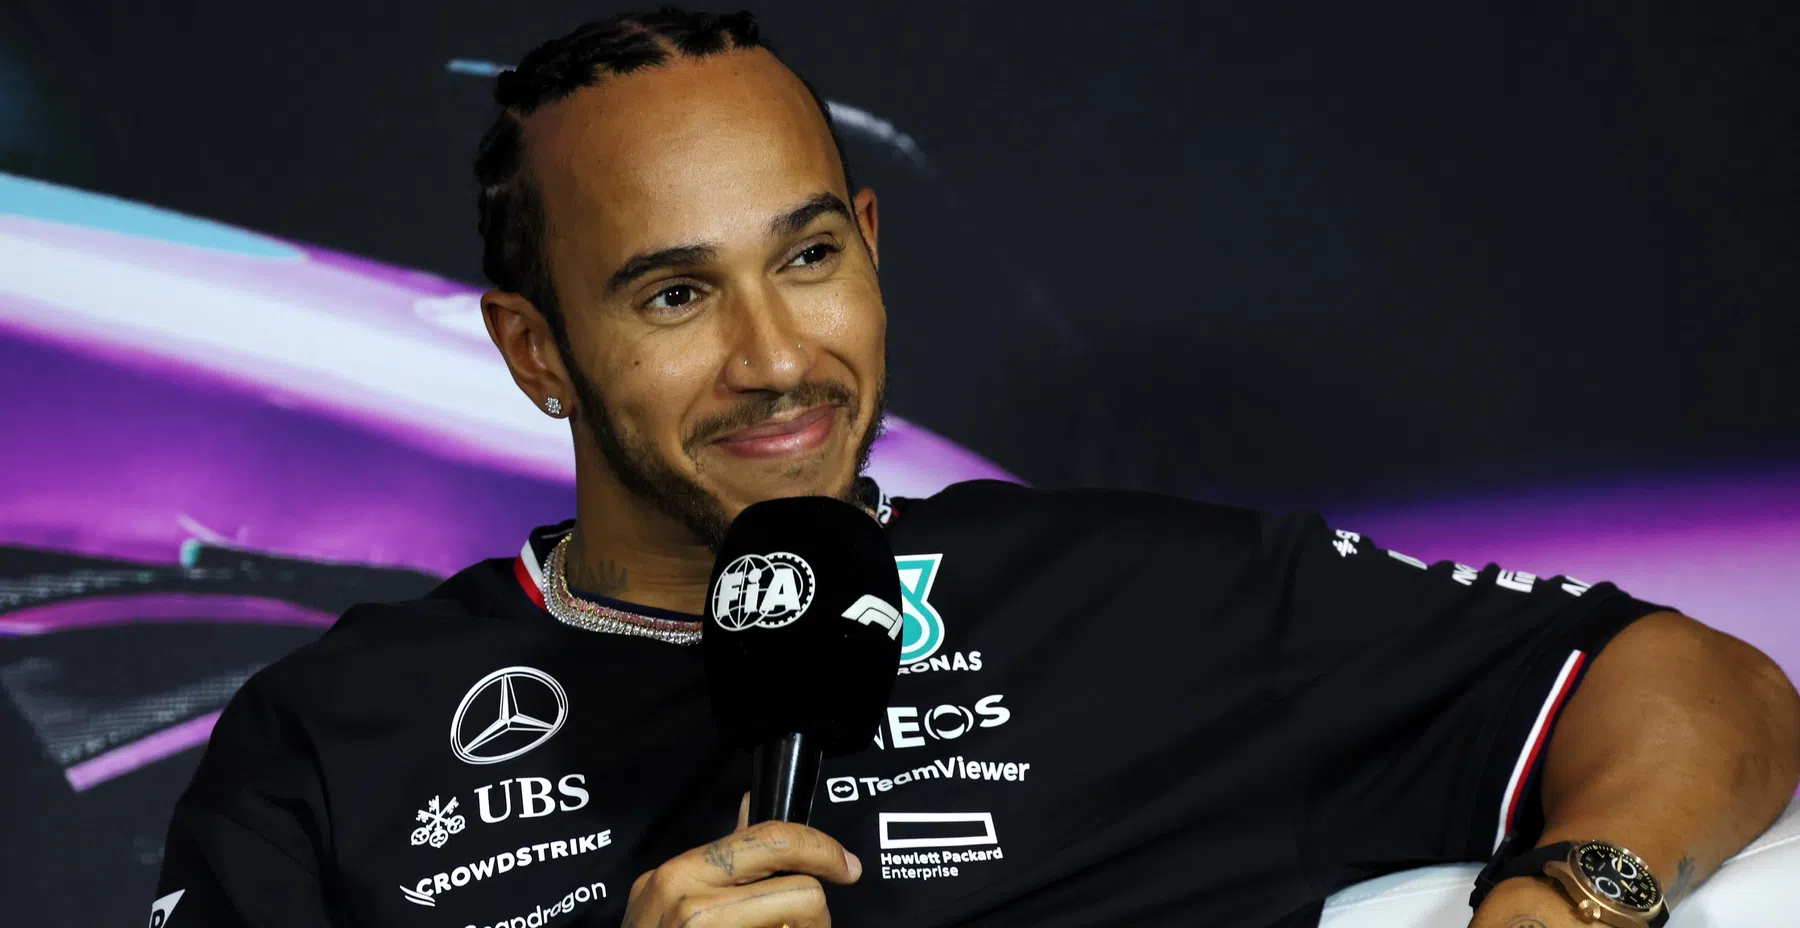 Stewards urteilen über Hamilton und Mercedes in Miami